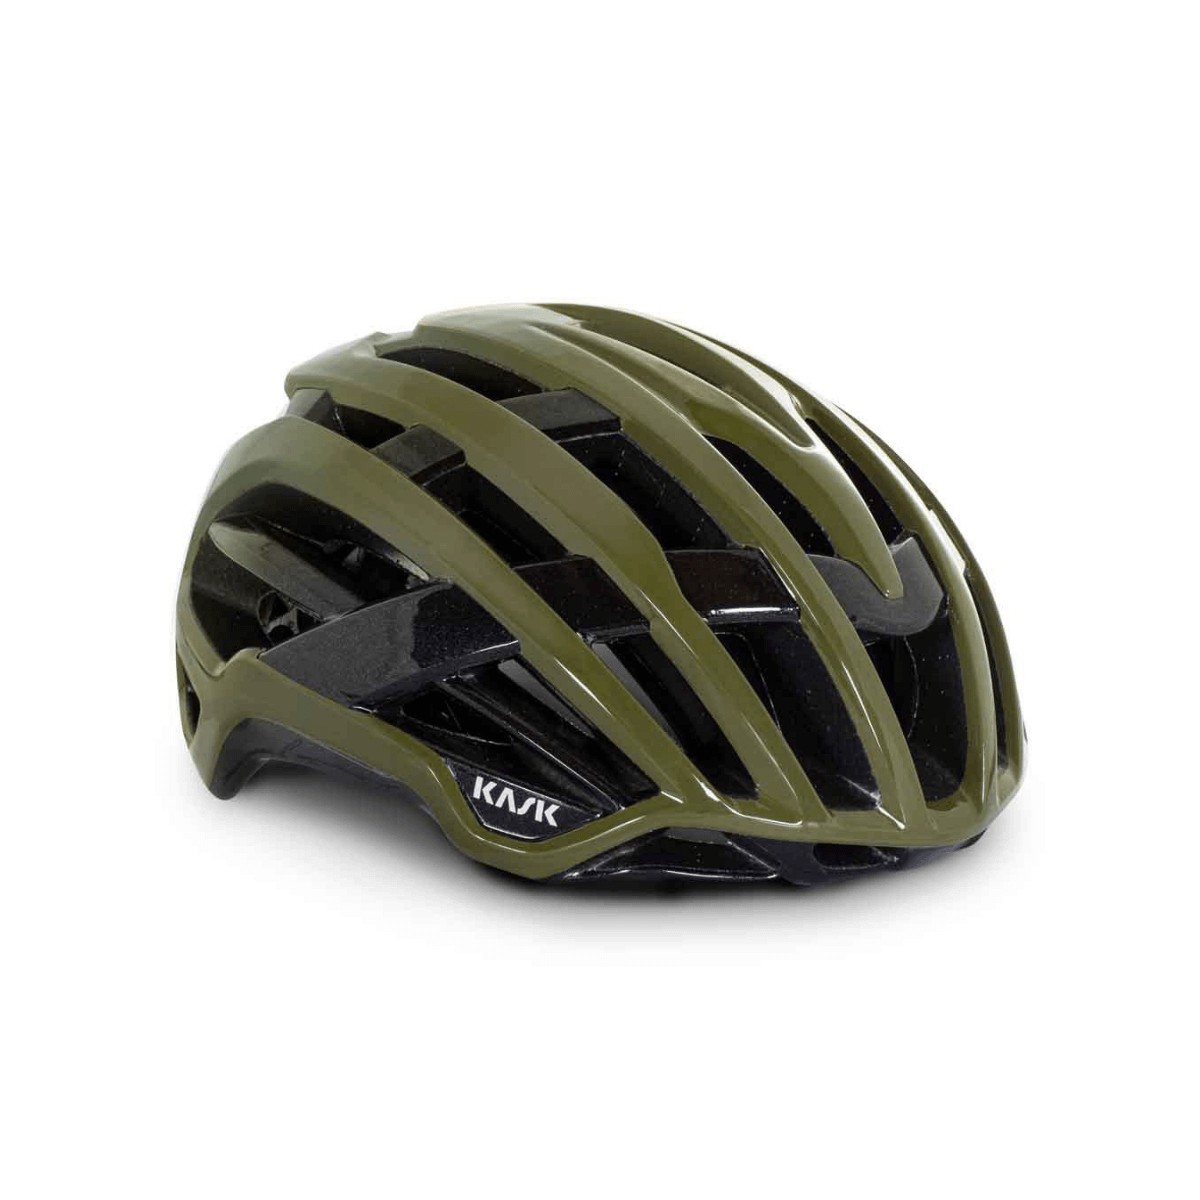 Kask Valegro WG11 Helmet Olive Green, Size L